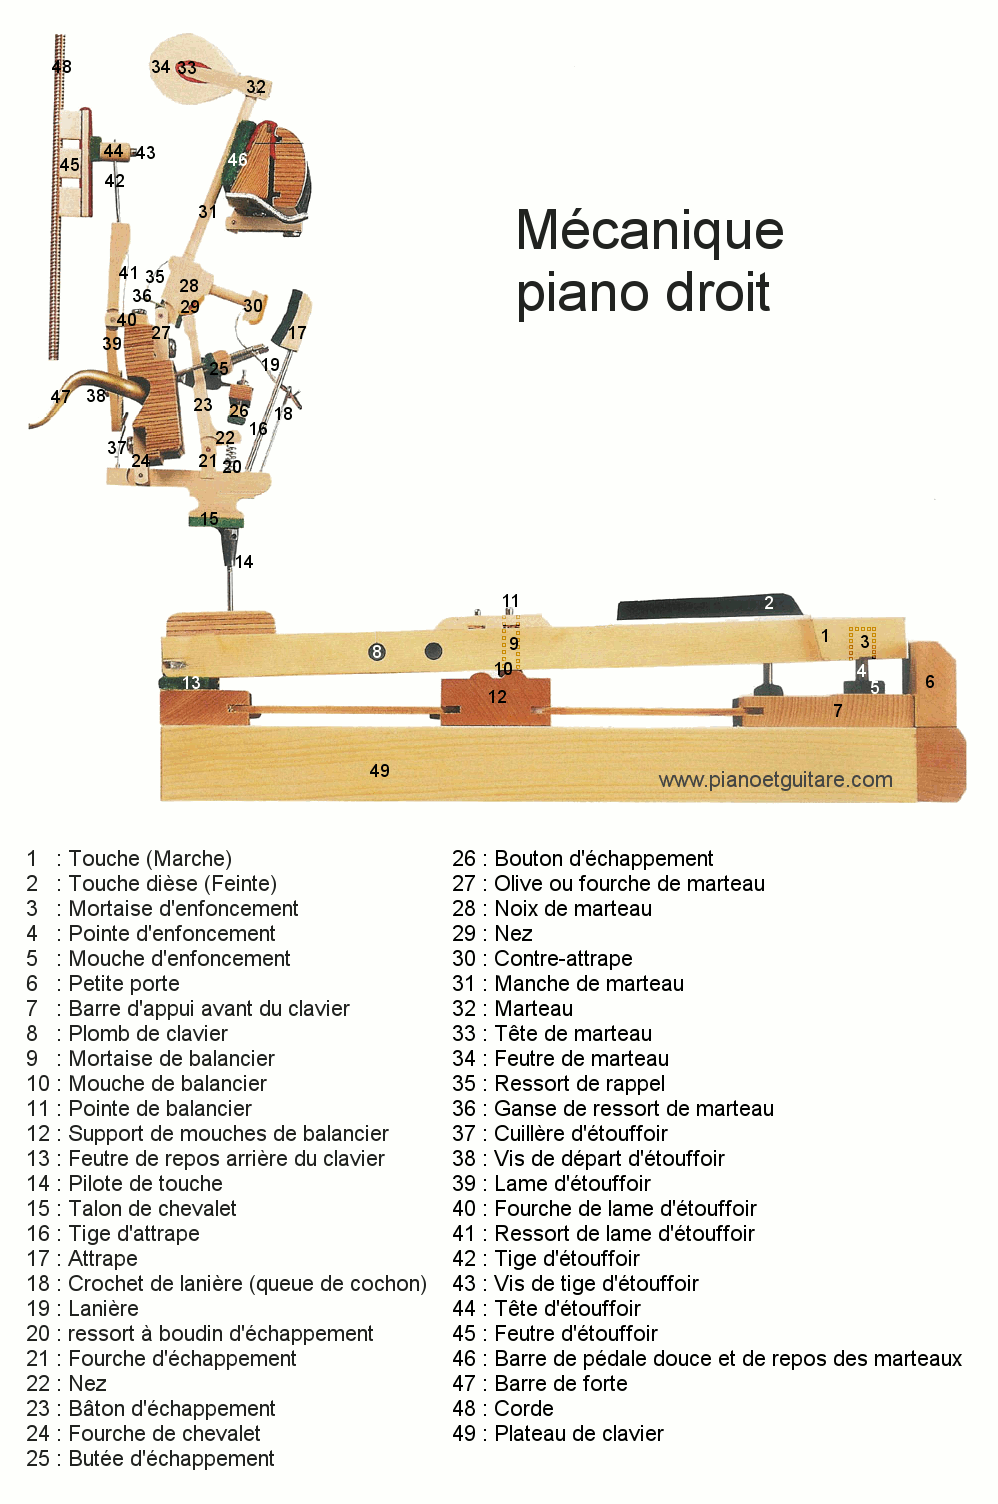 Mécanique piano droit